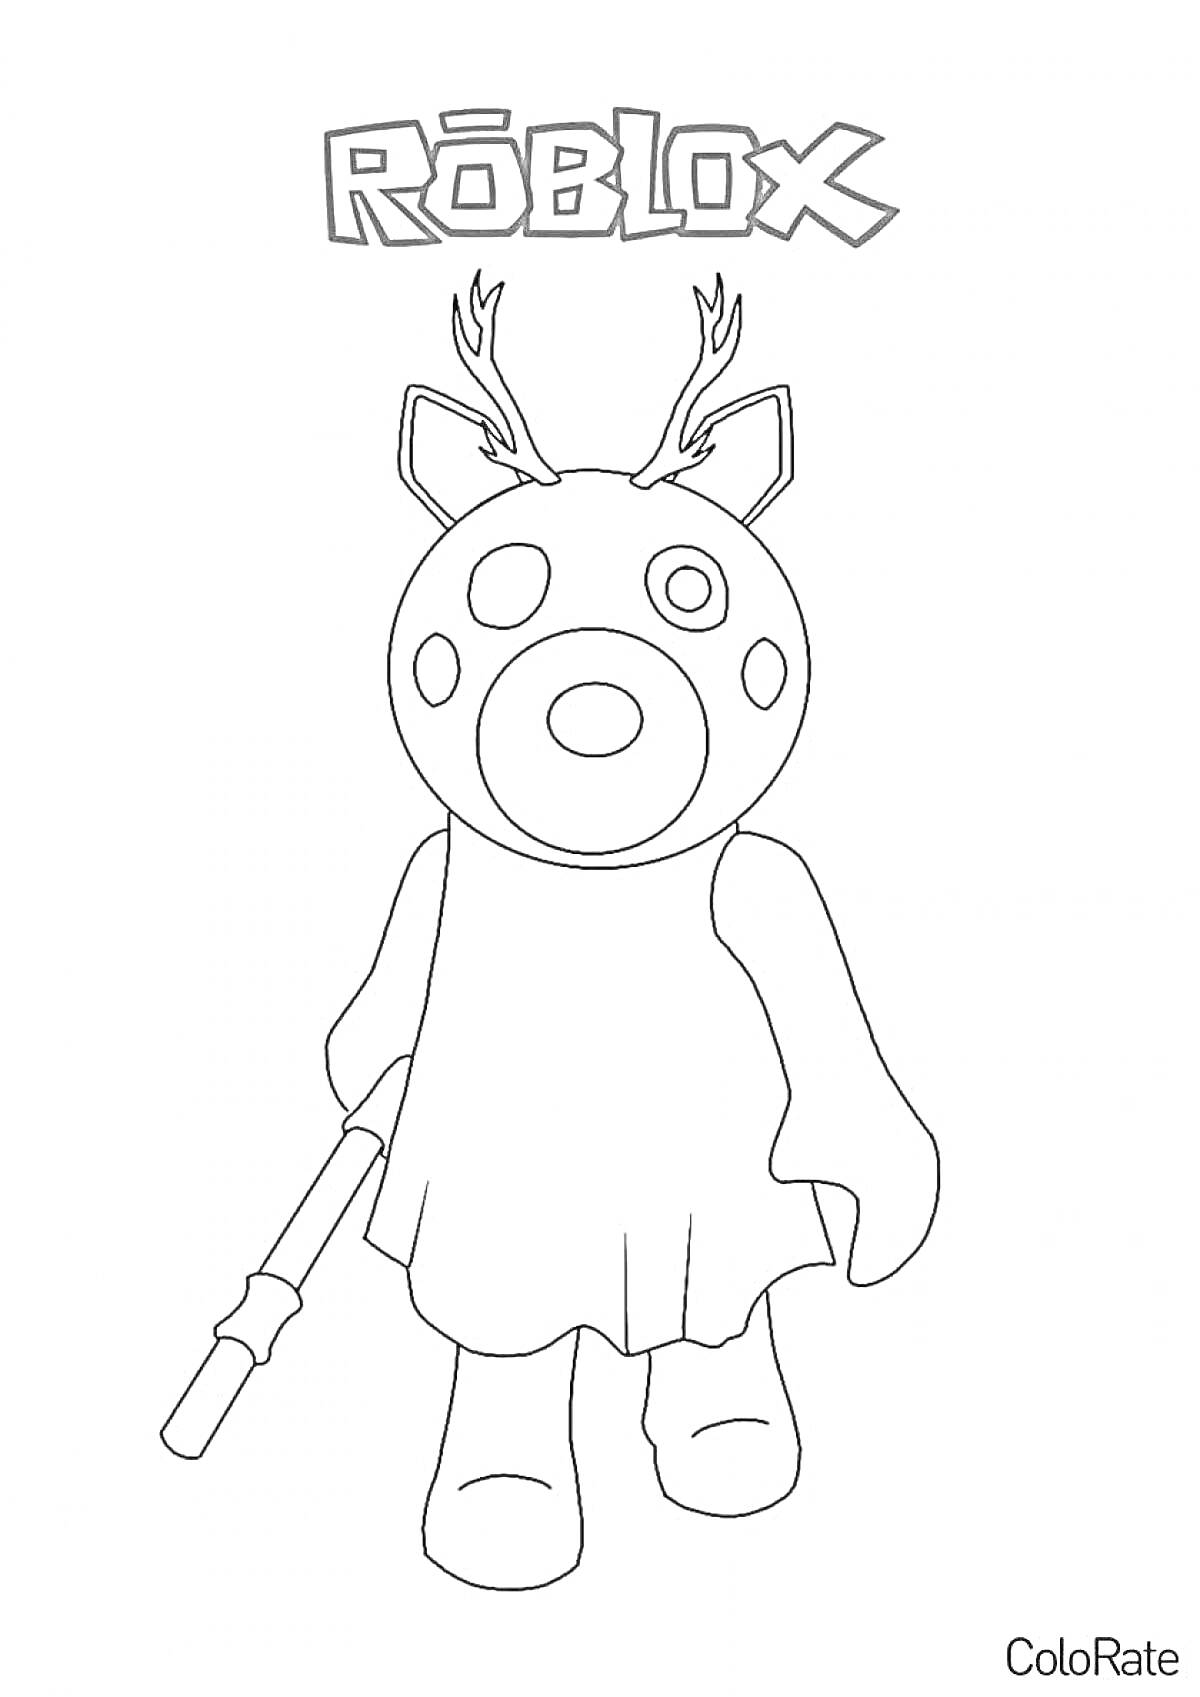 Раскраска Рисунок персонажа с головой свиньи с рогами в платье, держащего дубинку, и логотипом 